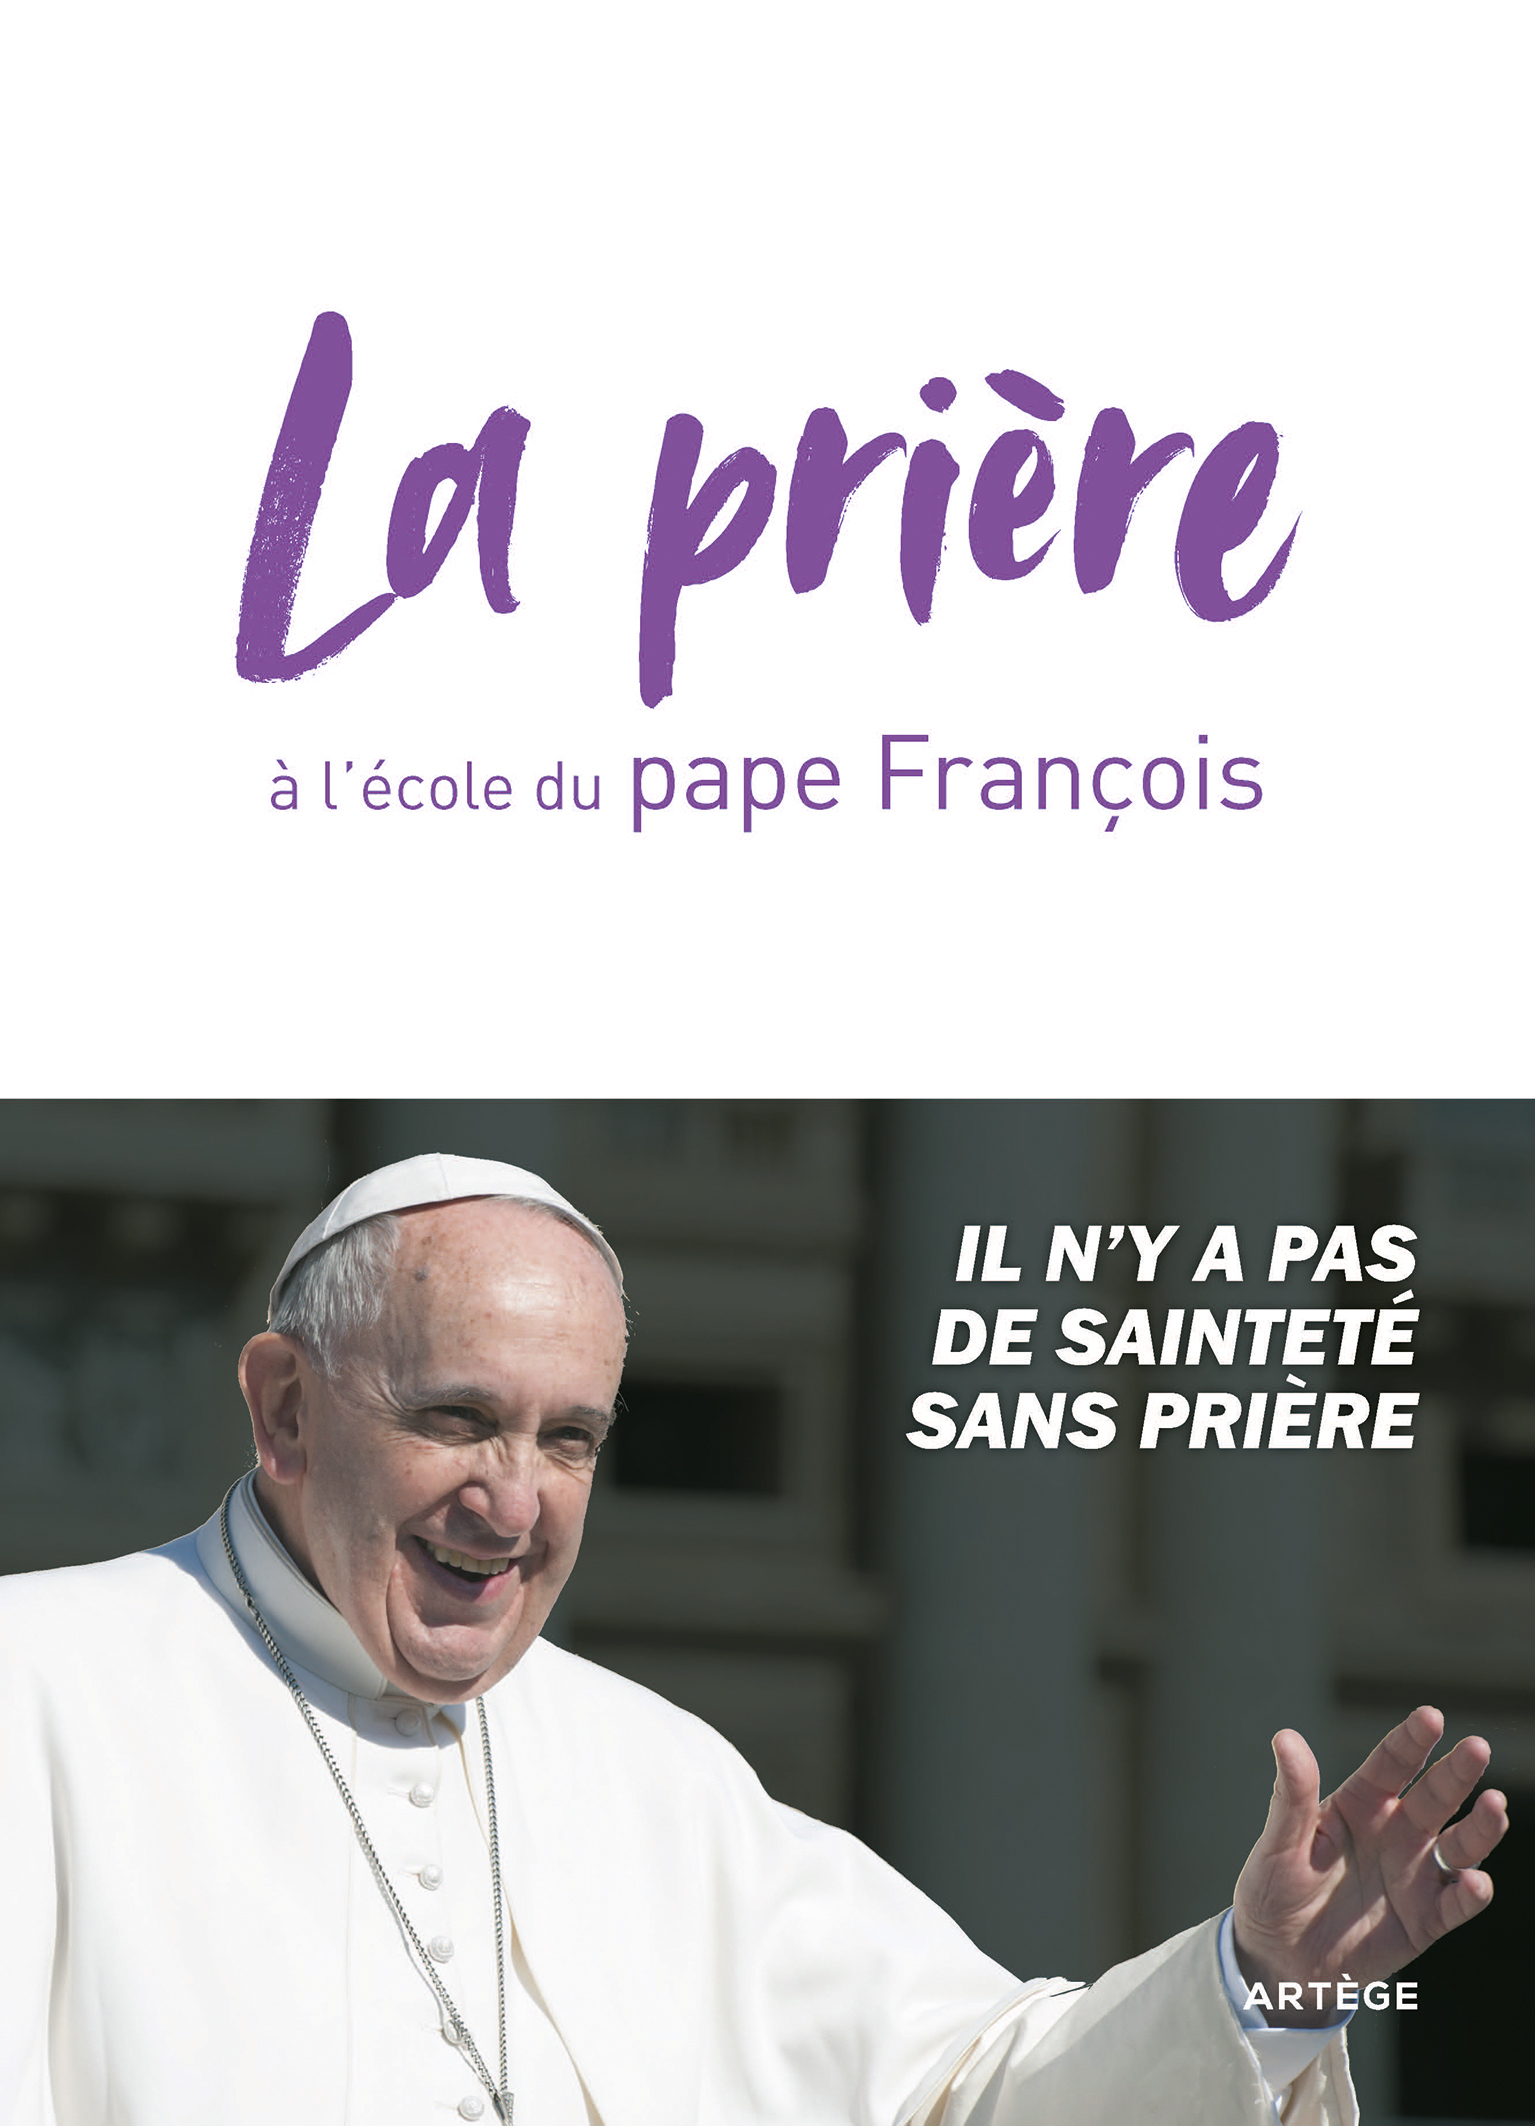  Carême pour tous 2024: Avec le pape François - Chanot, Cédric -  Livres